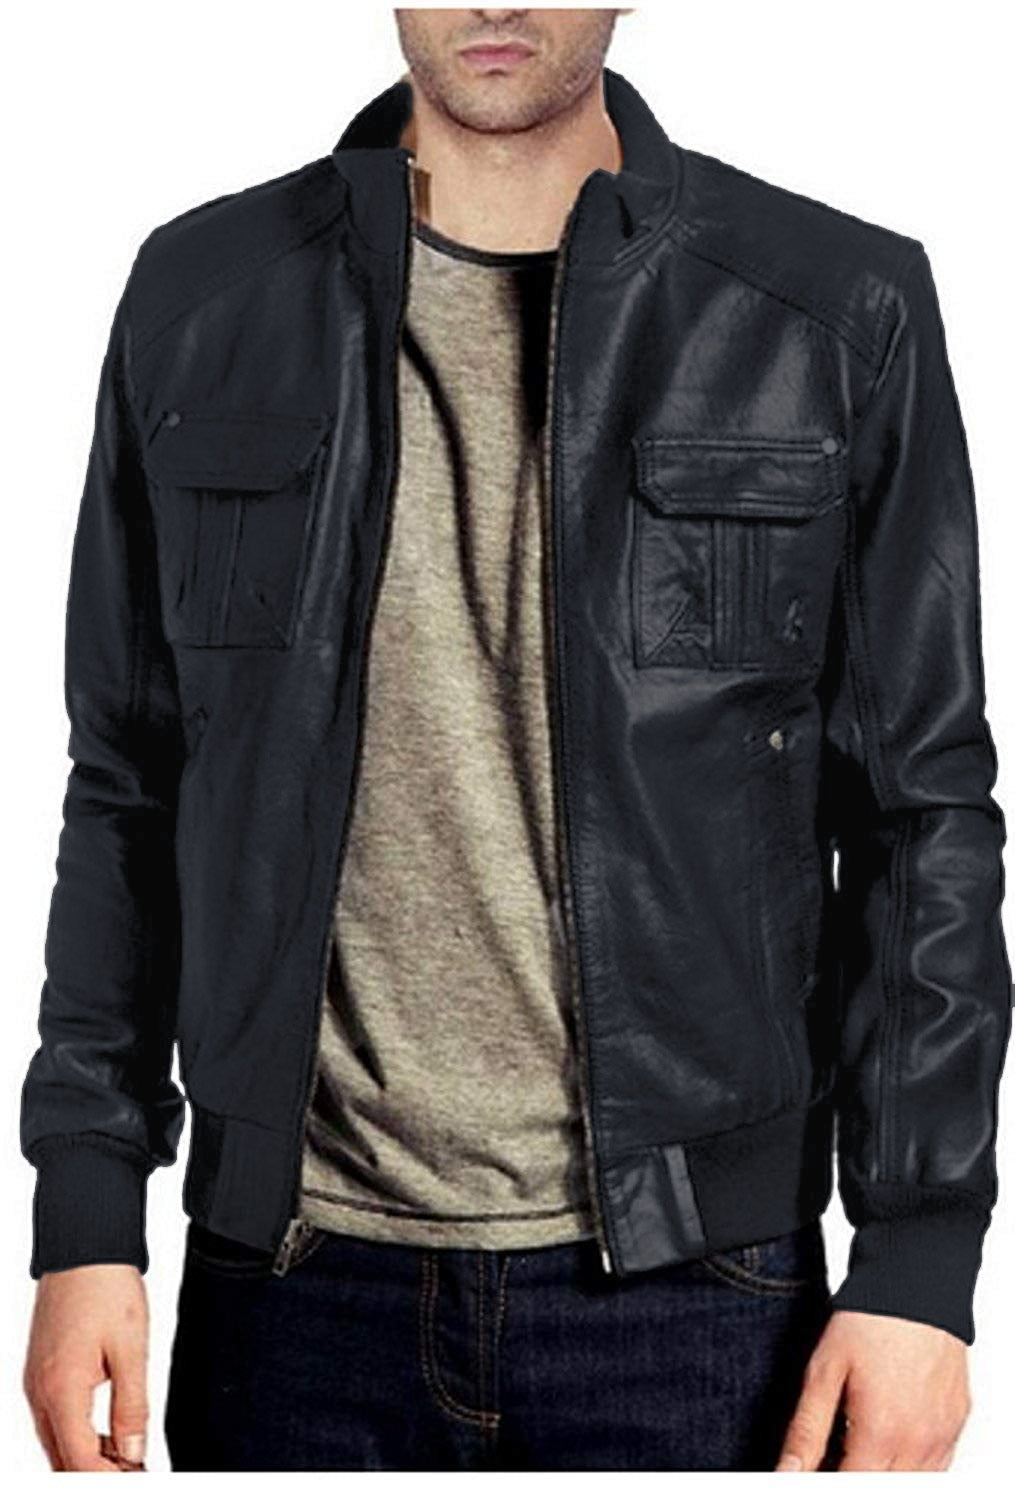 Leather Jackets Hub Mens Genuine Lambskin Leather Jacket (Black, Bomber Jacket) - 1501054